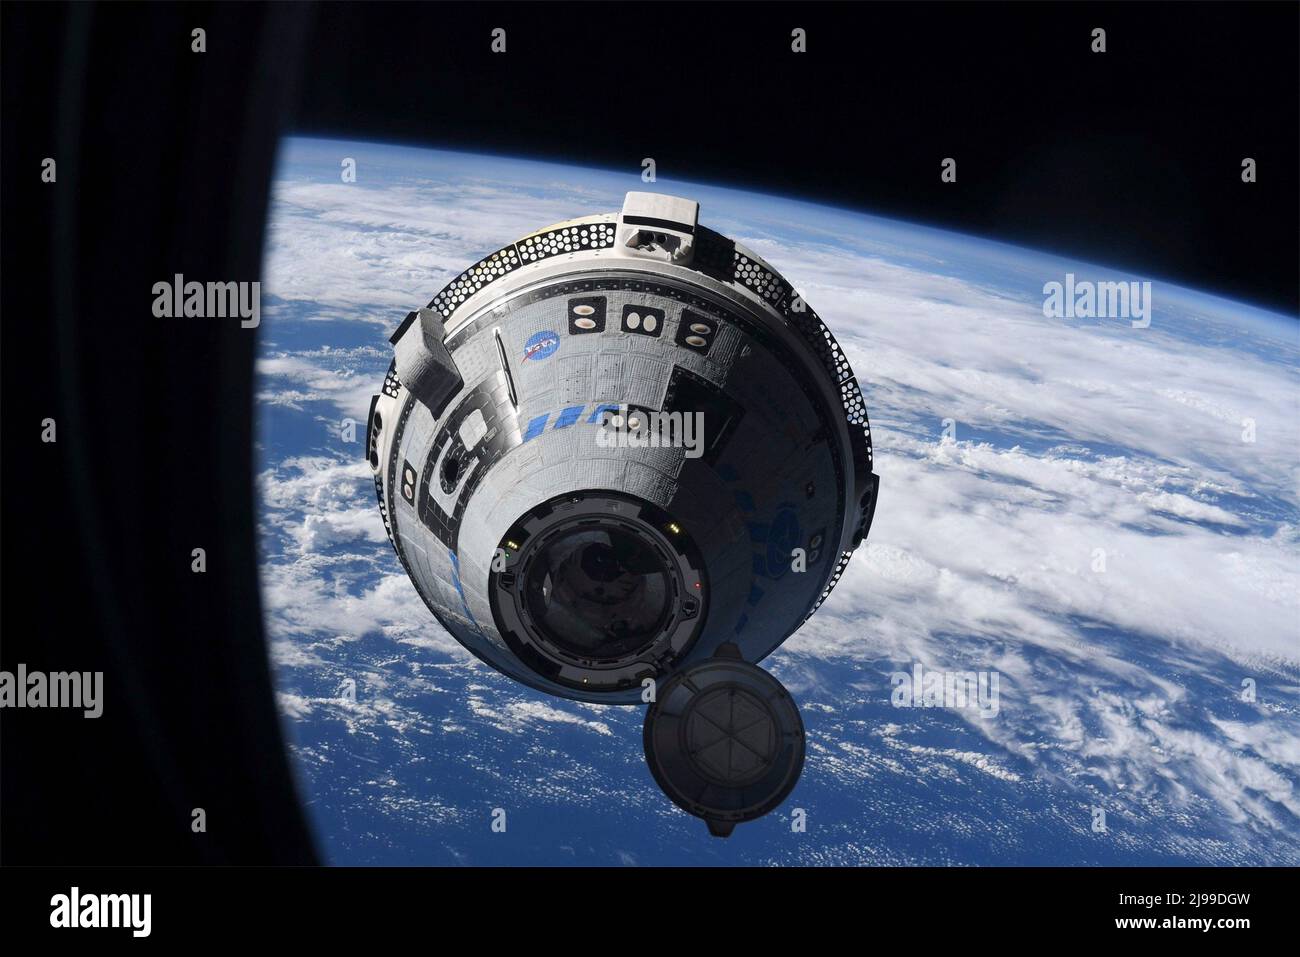 Stazione spaziale Internazionale, Earth Orbit. 21st maggio 2022. Stazione spaziale Internazionale, Earth Orbit. 21 maggio 2022. Il Boeing CST-100 Starliner si avvicina per la prima volta all'attracco con la Stazione spaziale Internazionale, il 21 maggio 2022 a Earth Orbit. Credit: ESA/NASA/Alamy Live News Foto Stock